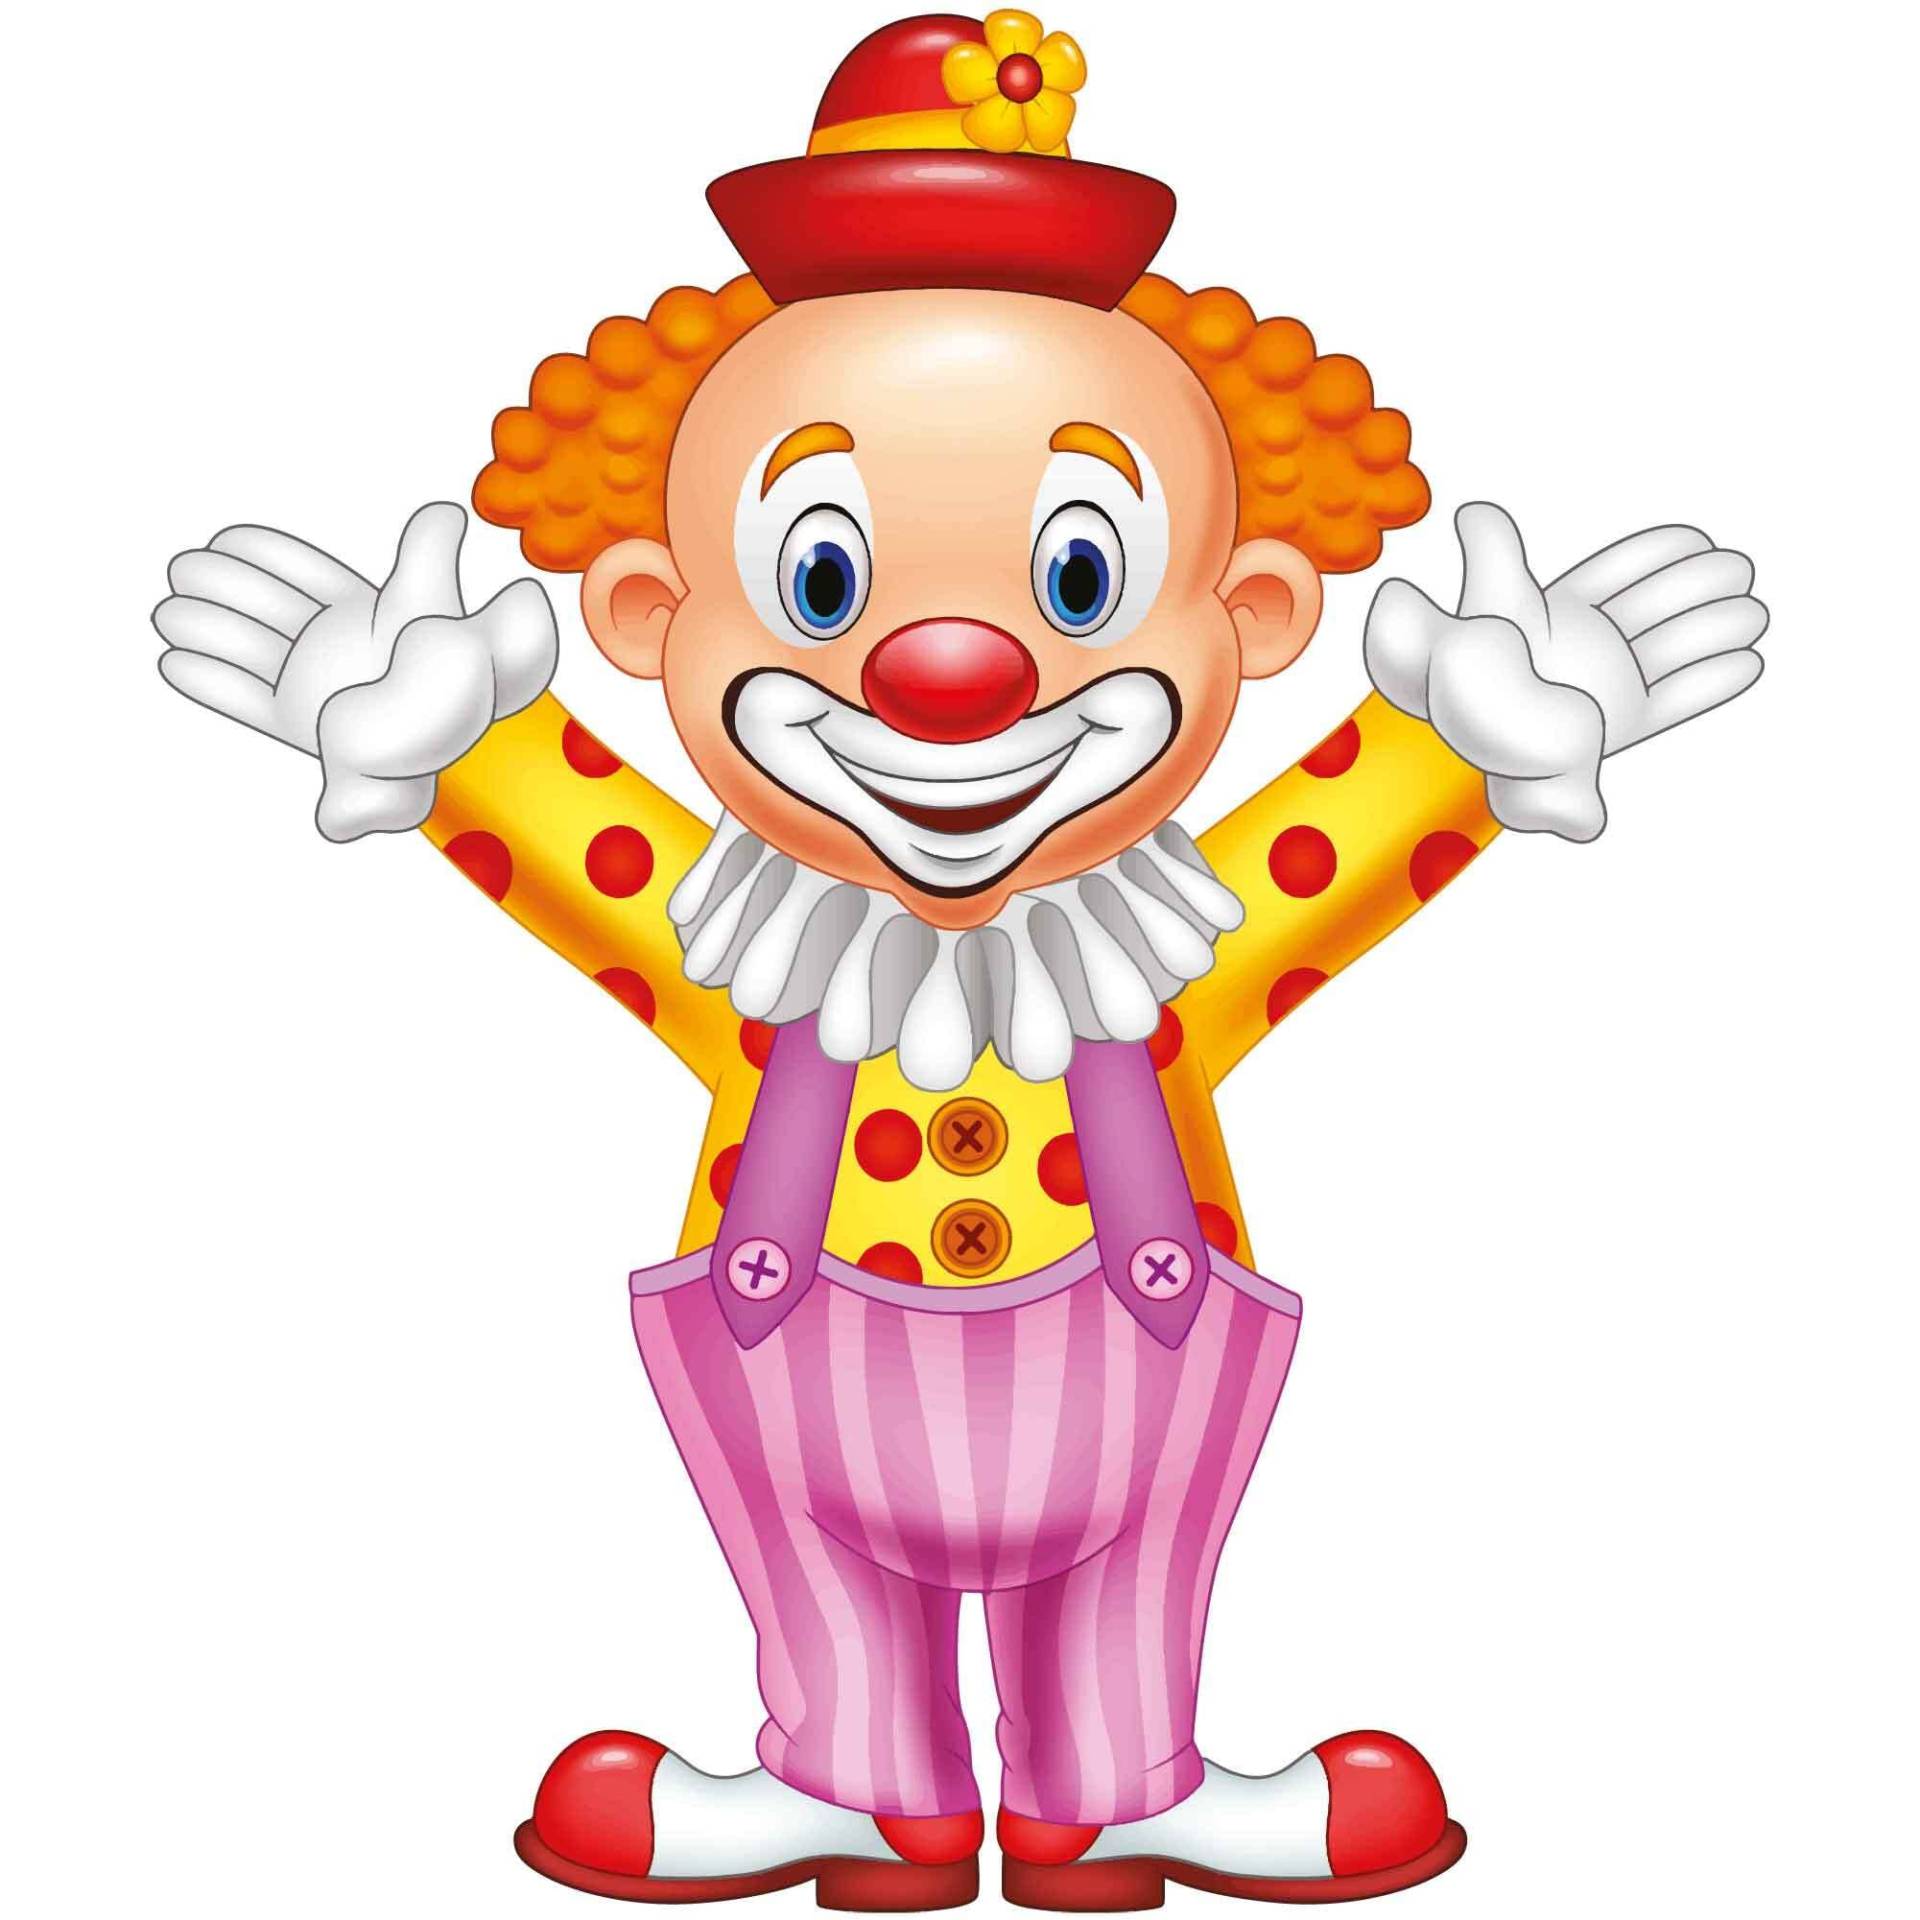 kleberio Aufkleber Clown Circus Sticker Set selbstklebend Autoaufkleber Kinder Album Kindergarten Wohnwagen Dekoration Set Car Caravan 12 x 10 cm von kleberio